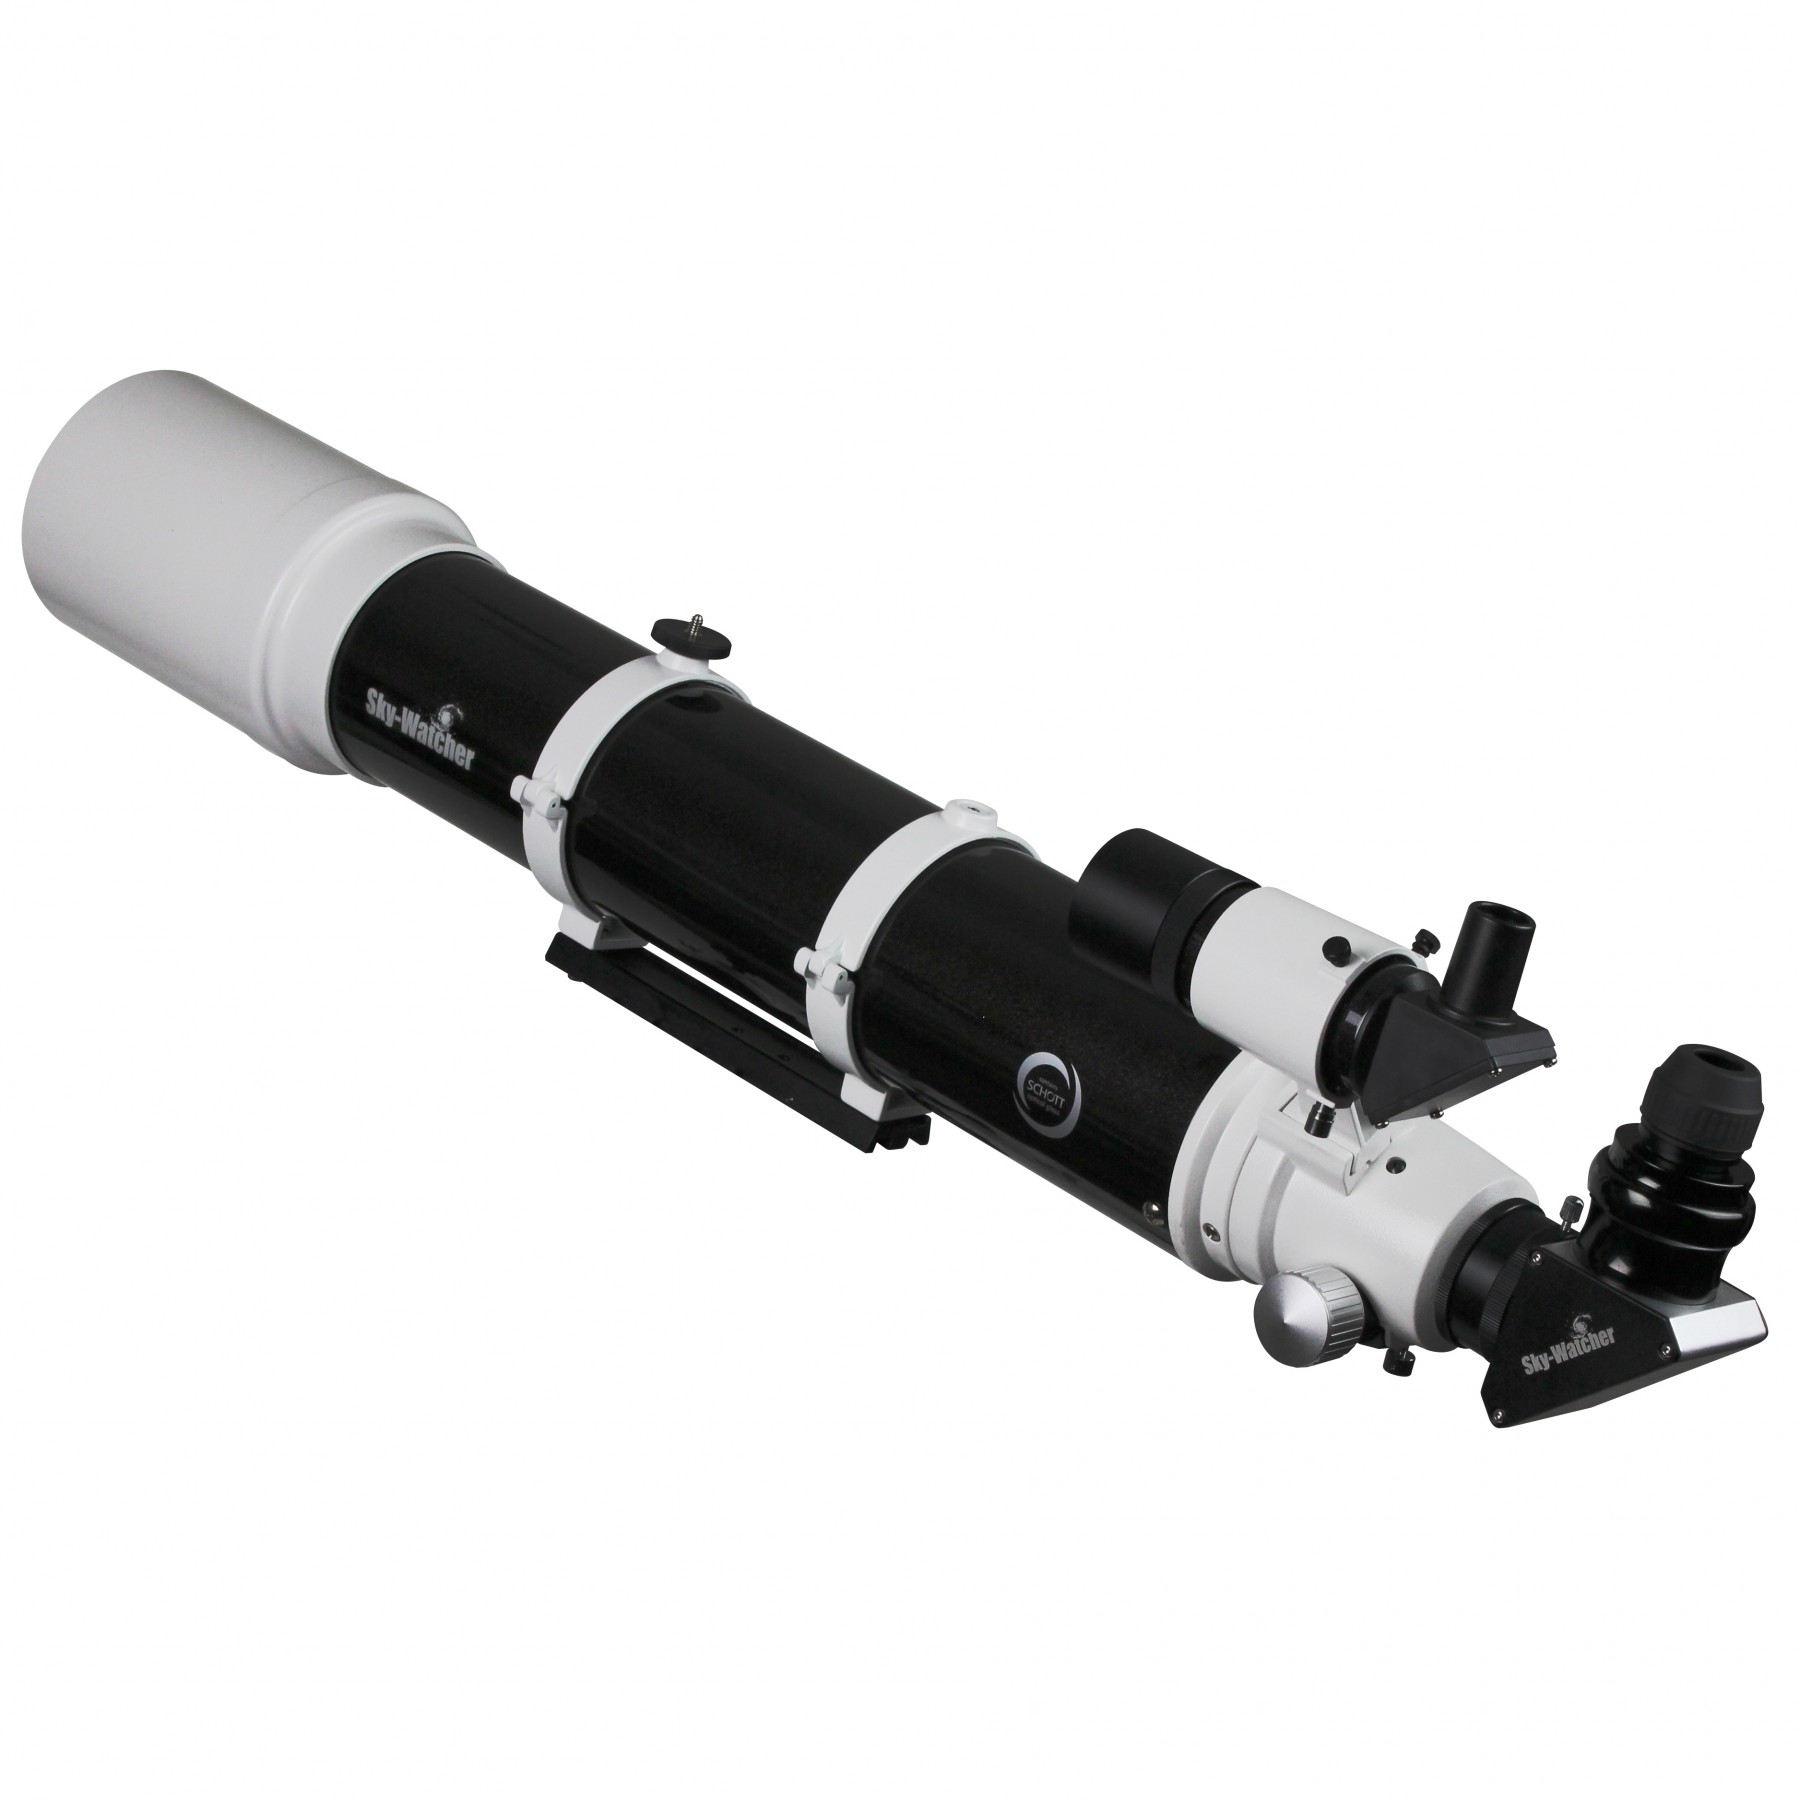 Sky-Watcher ProED 120mm Doublet APO Refractor Telescope